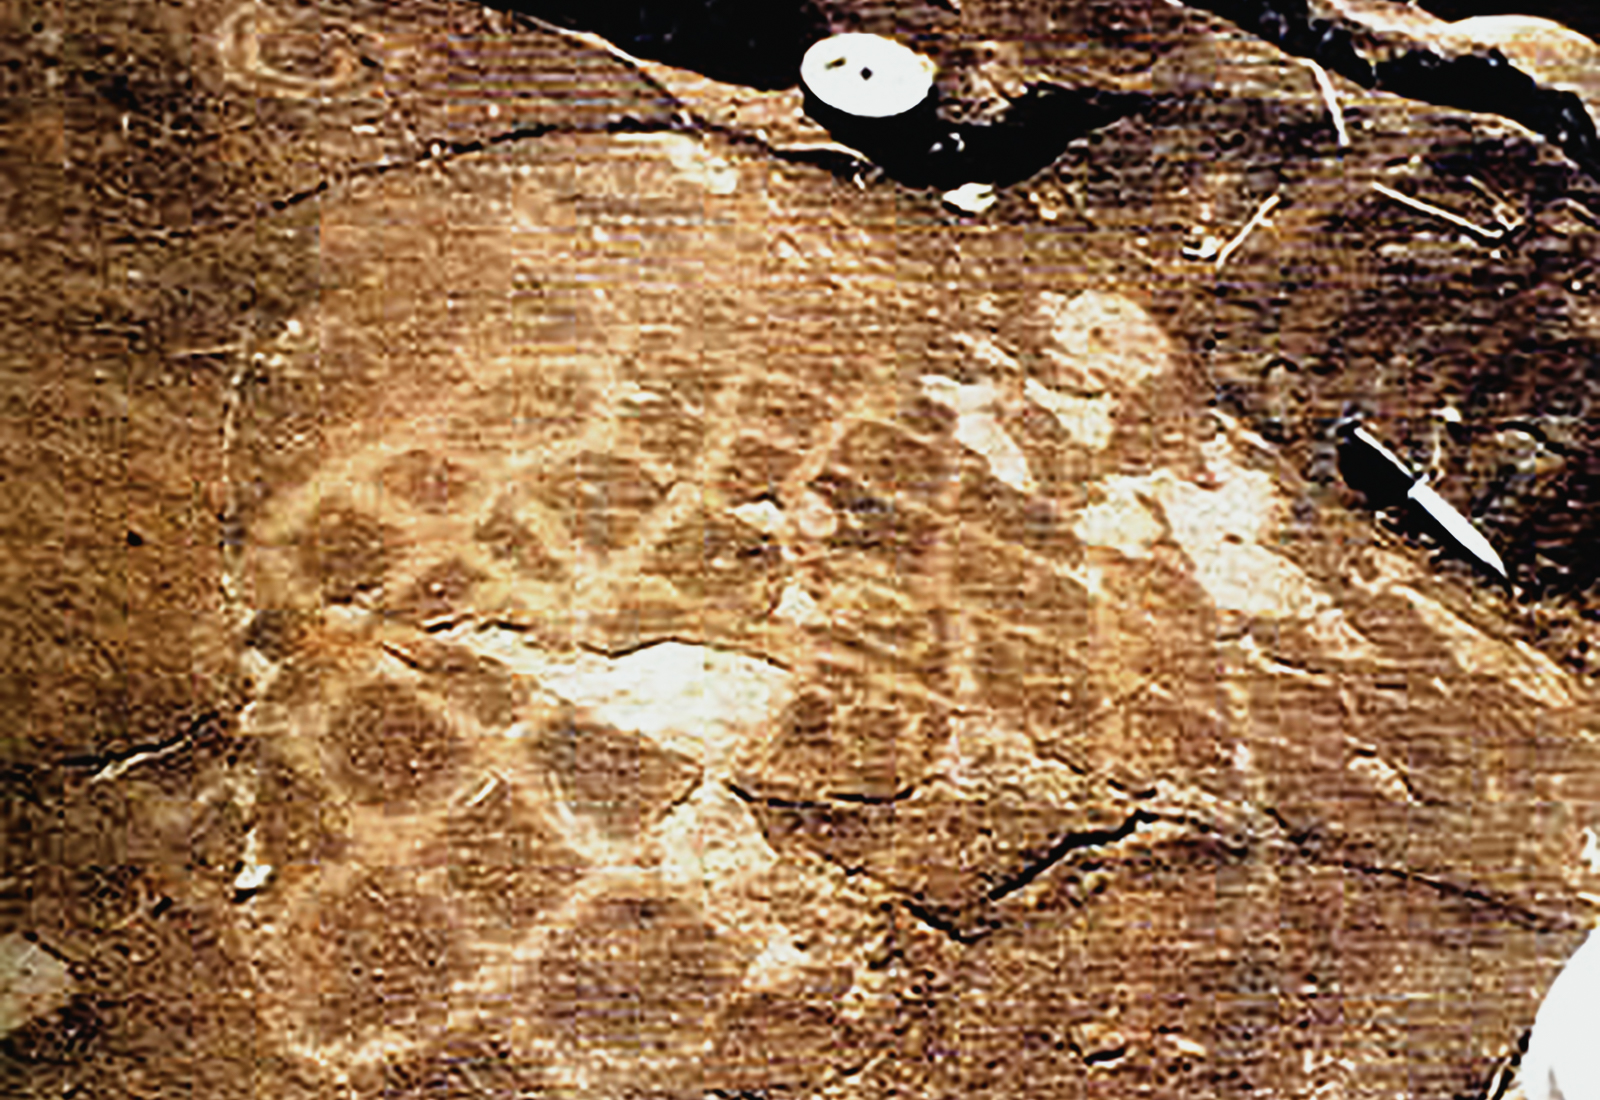 Campeche Rock Art Petroglyphs